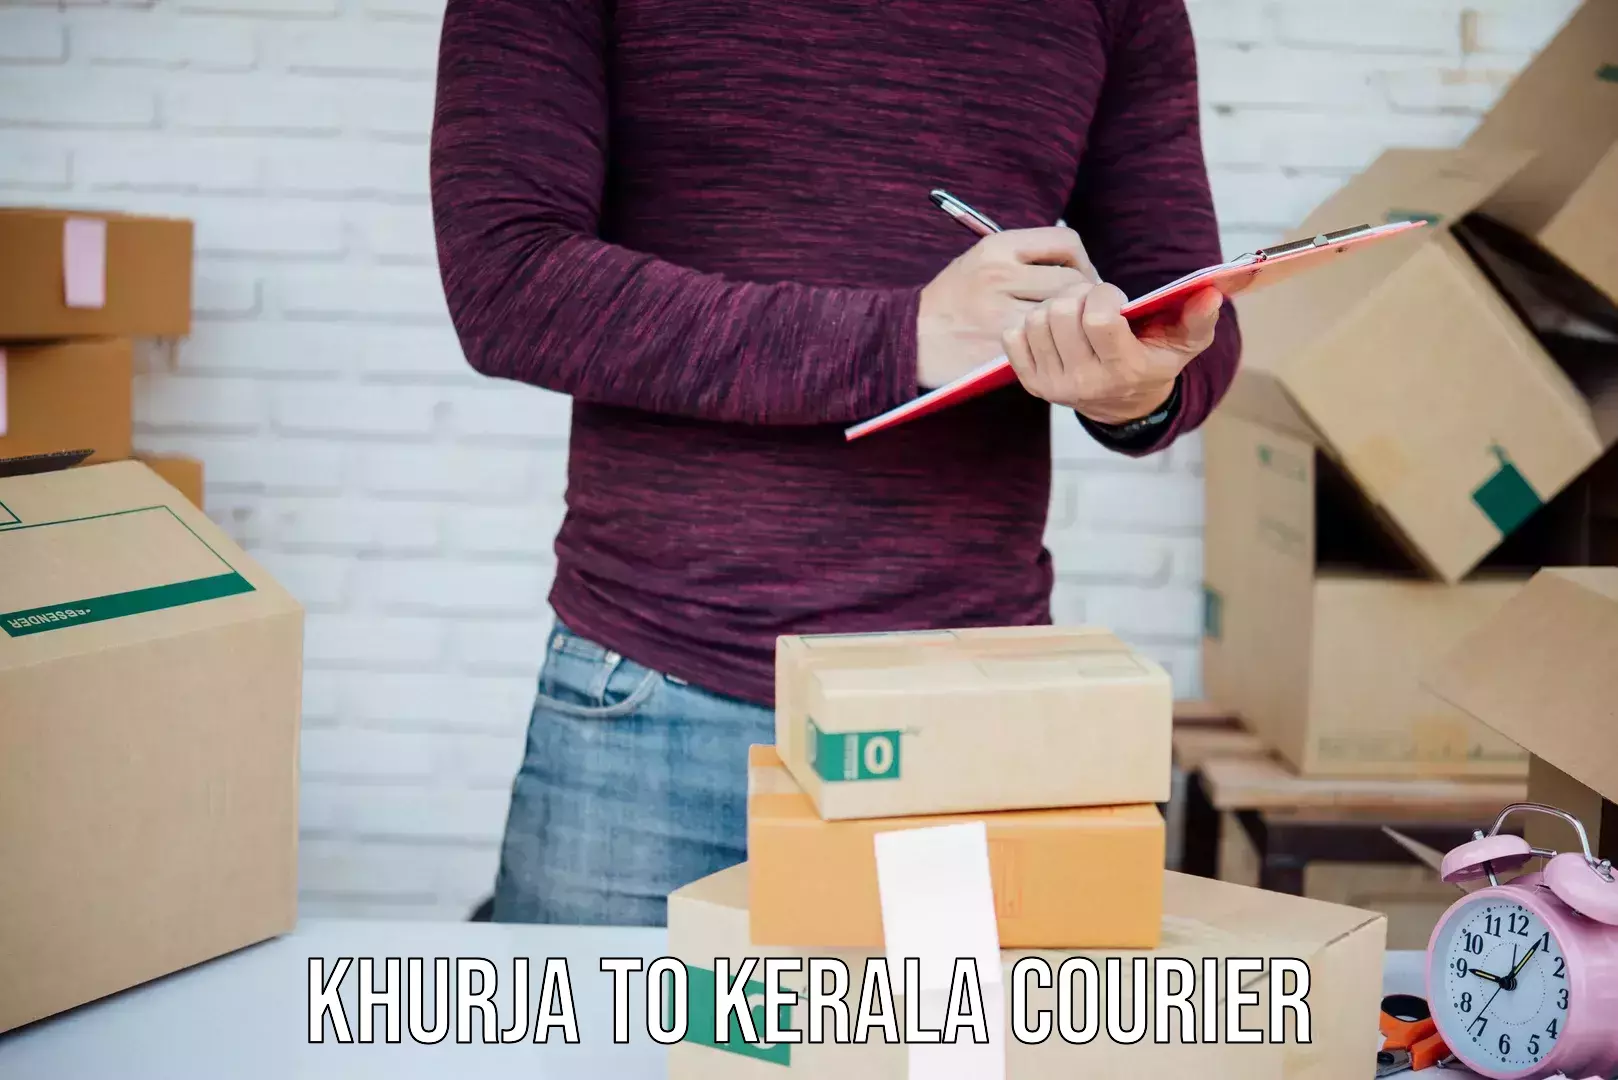 Express logistics providers Khurja to Tirur